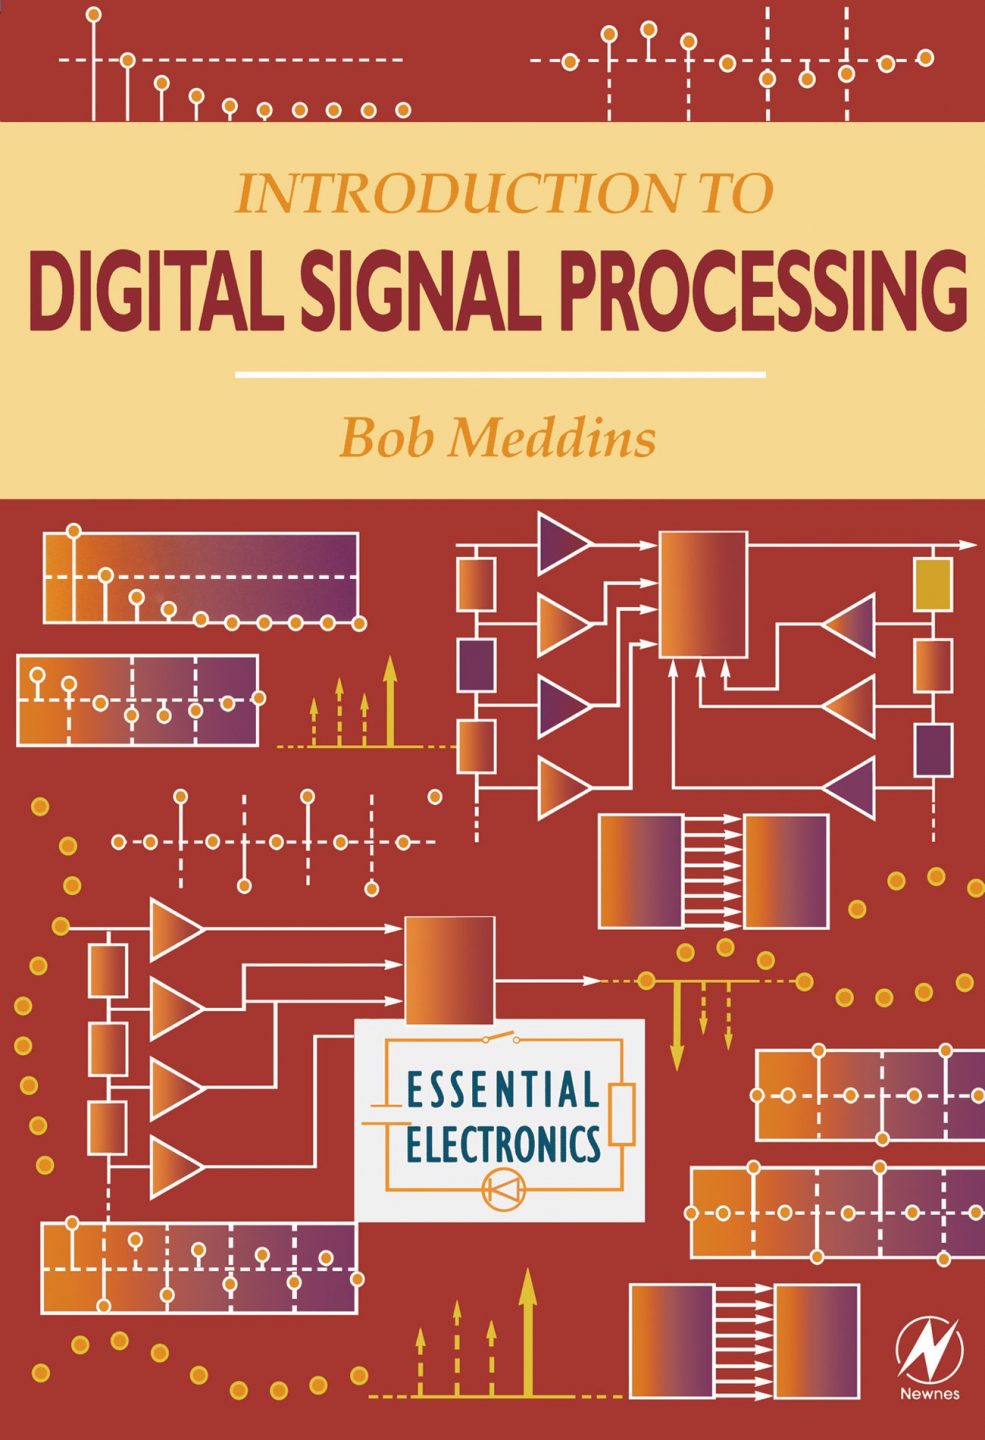 Introduction to Digital Signal Processing 1 Edición Bob Meddins PDF